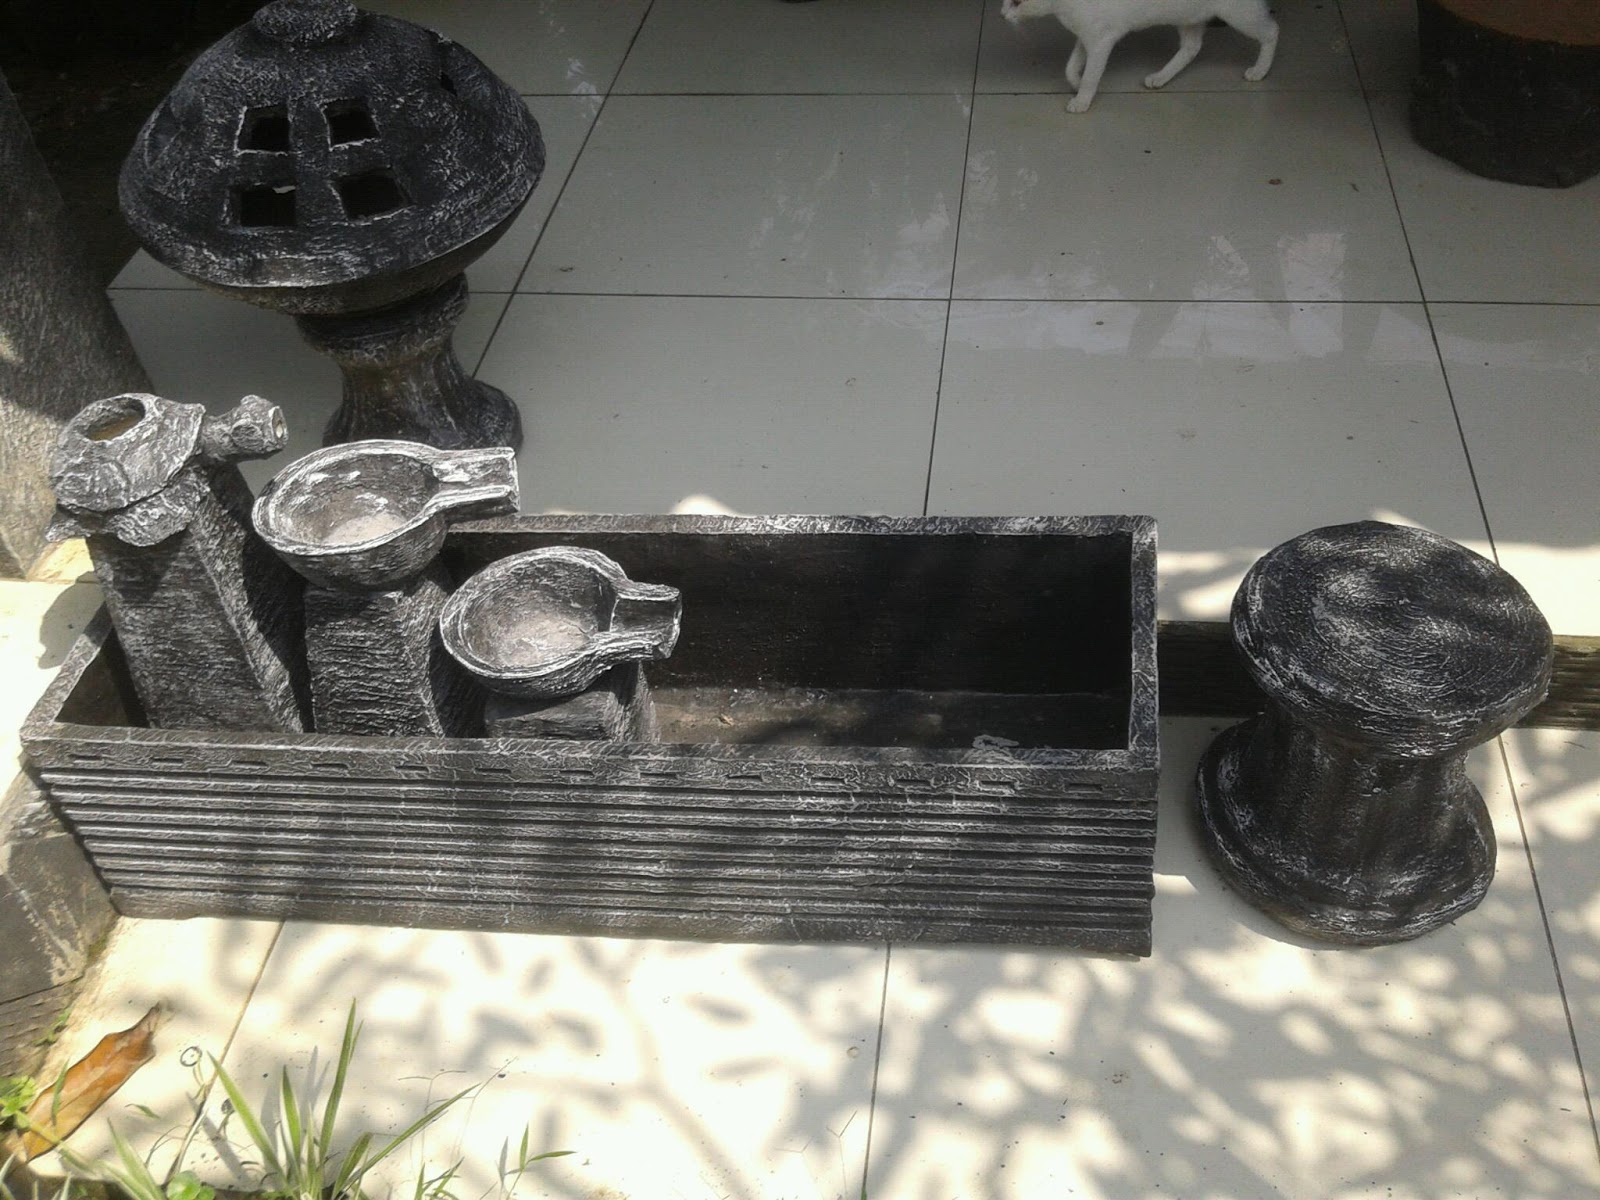  Jual  pot keramik  pot minimalis pagoda air mancur 